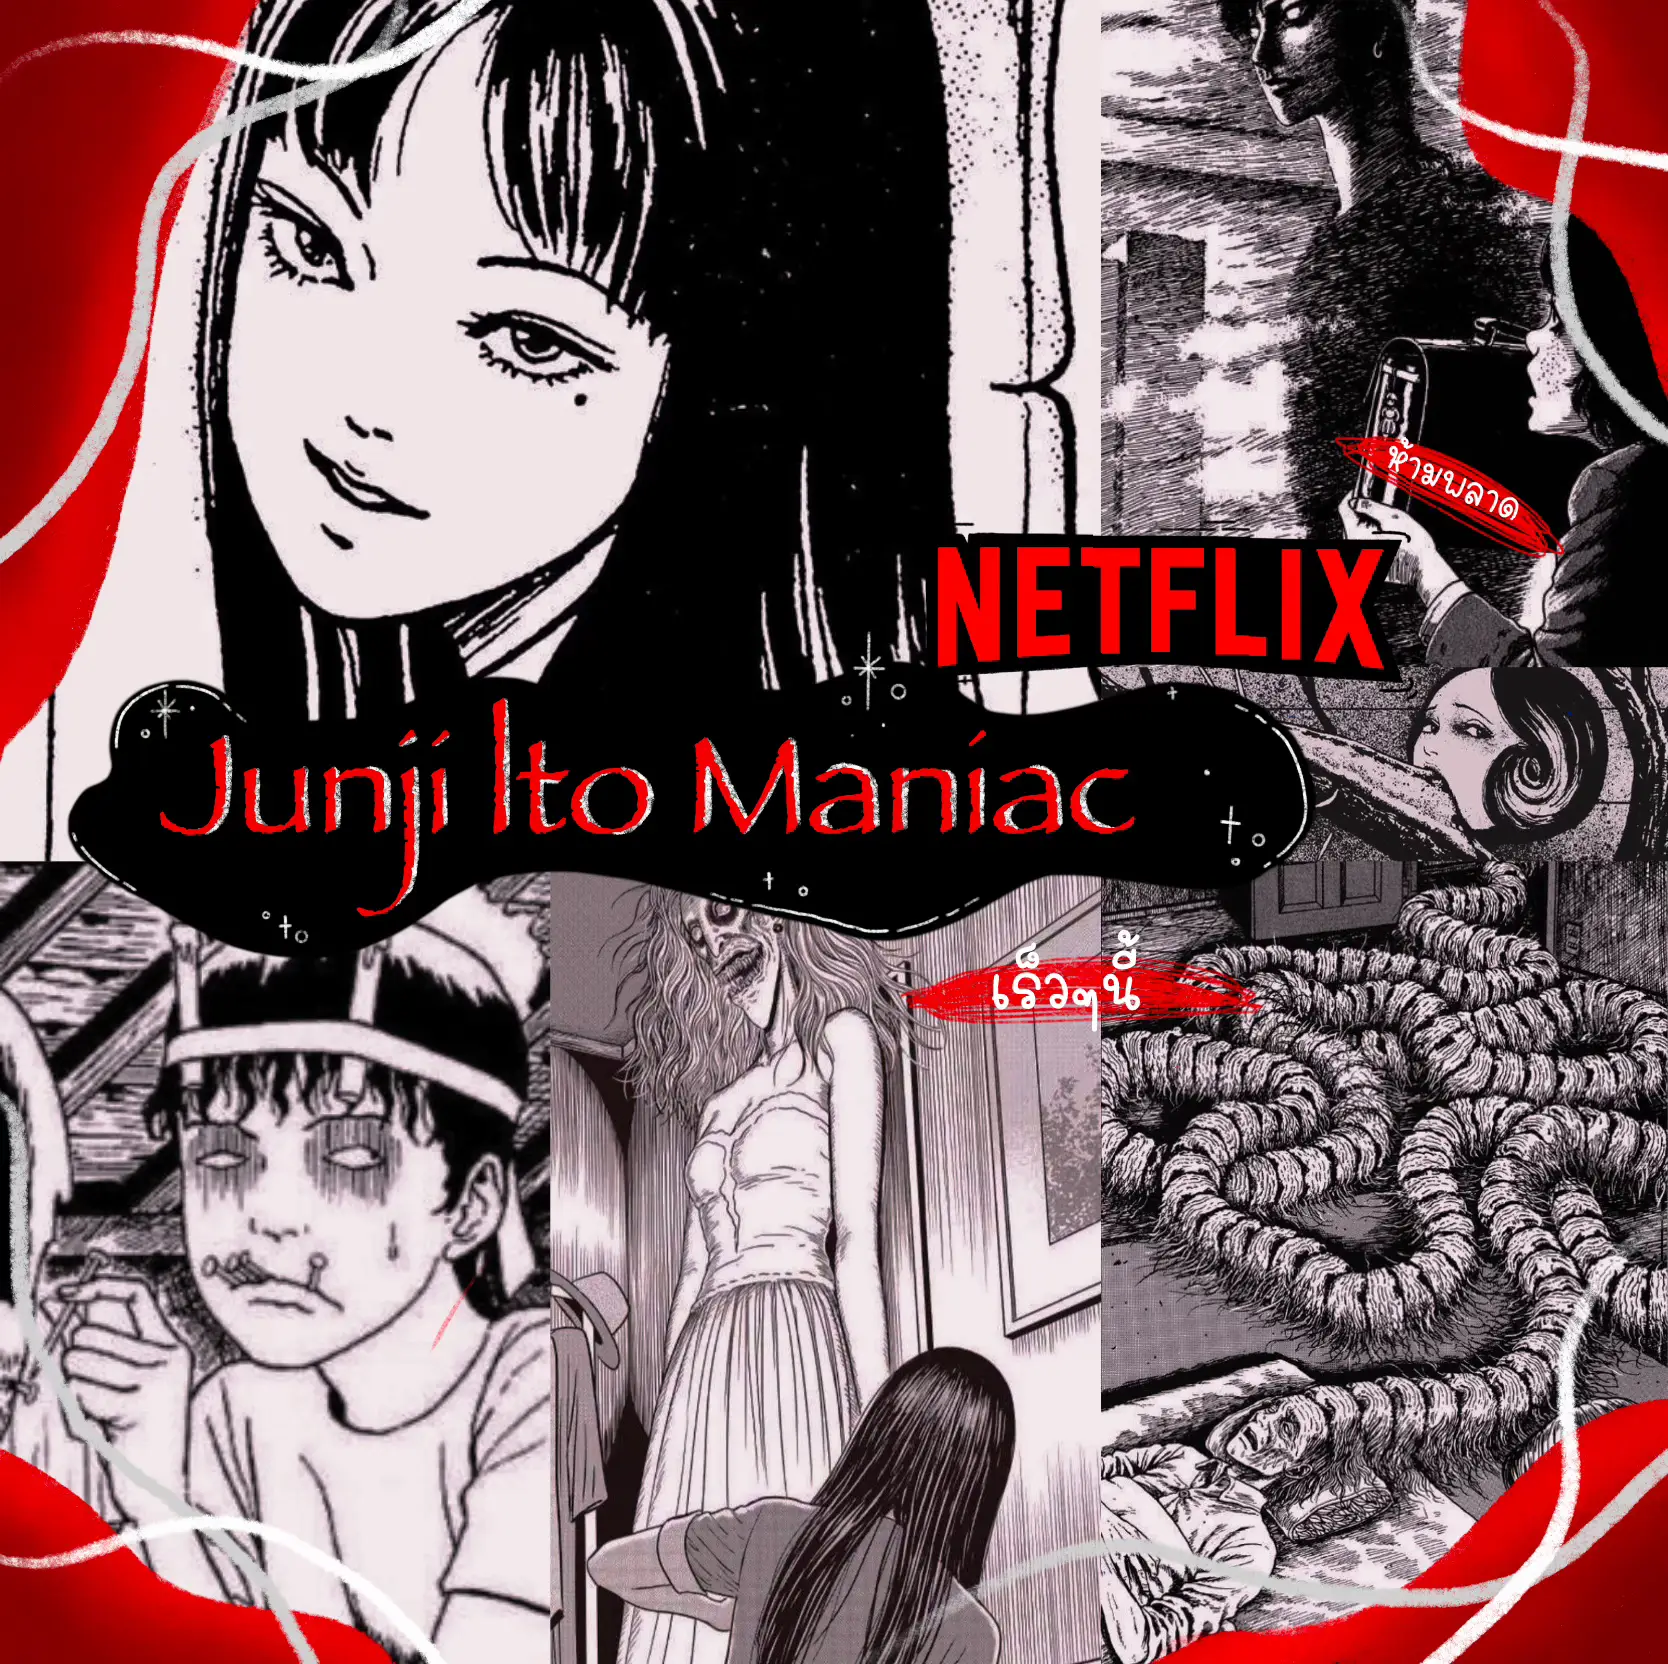 Anime Like Junji Ito Maniac